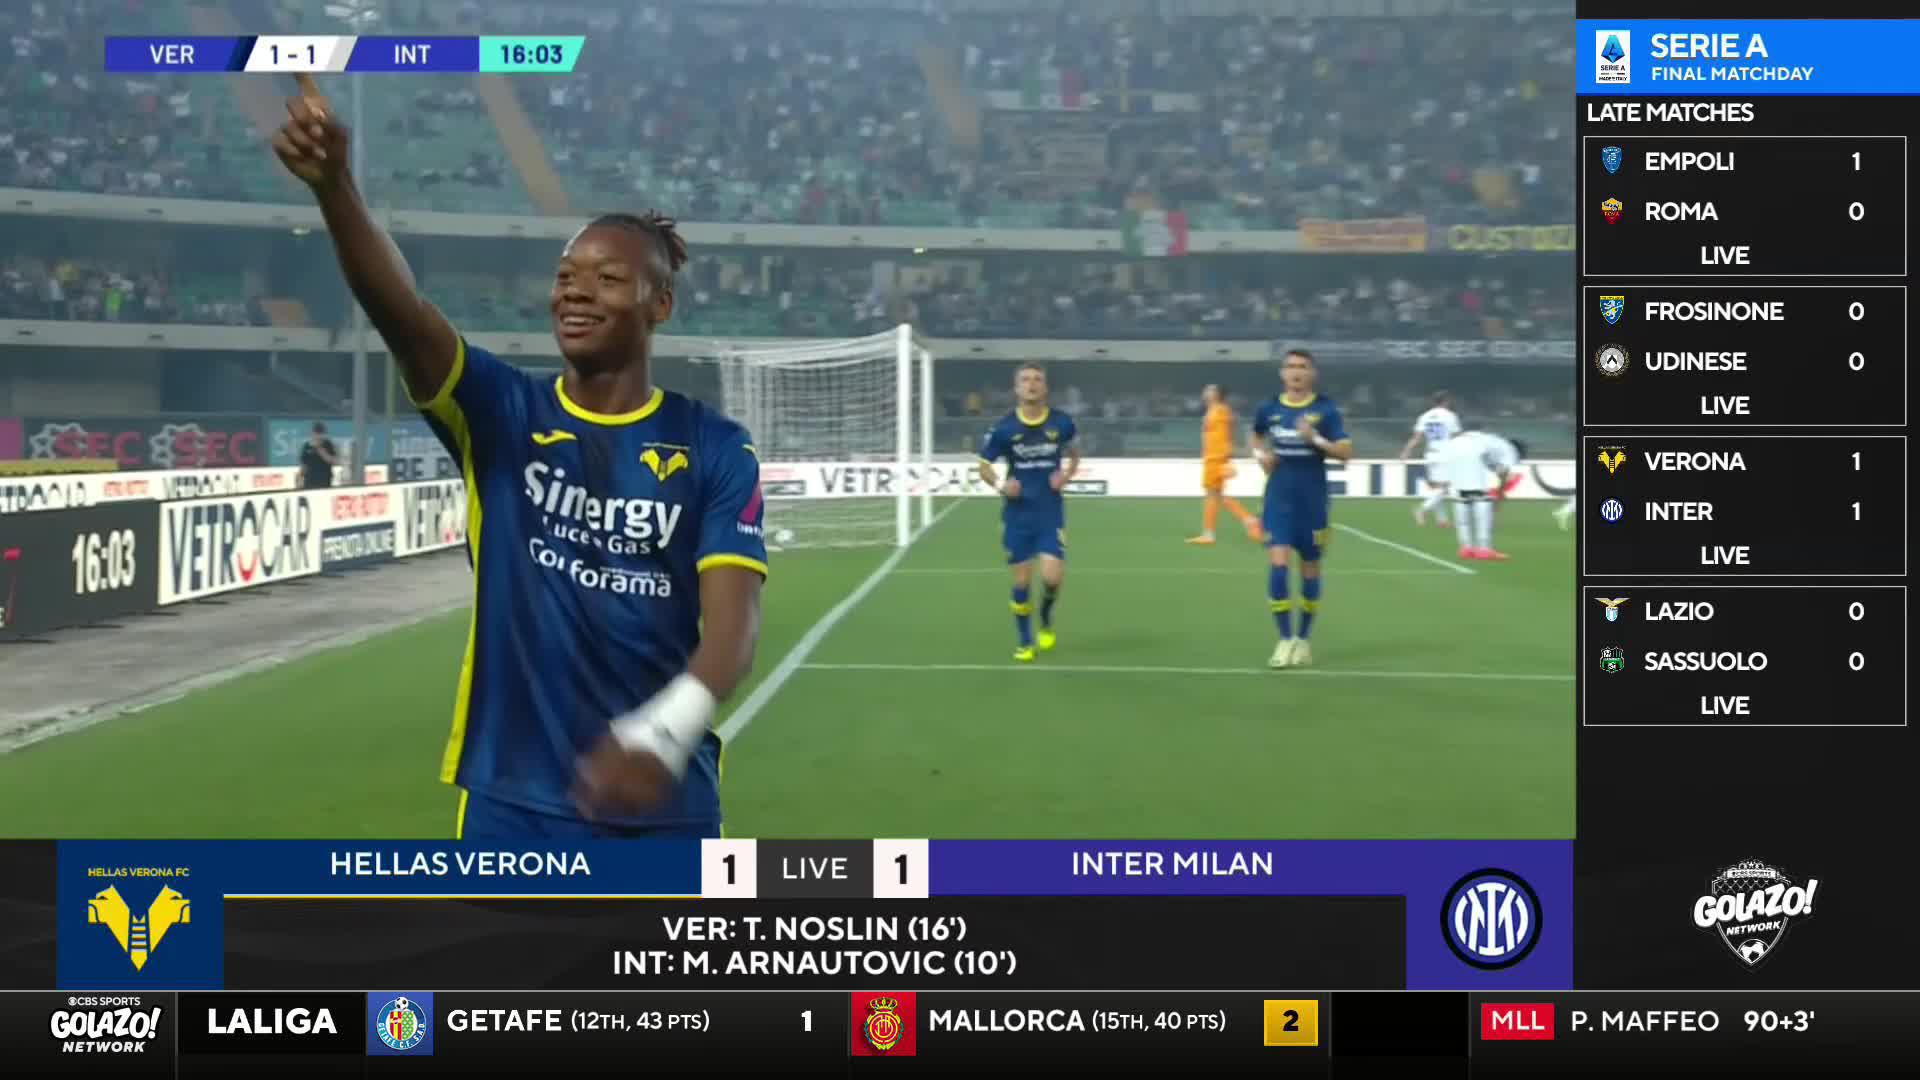 Hellas Verona level it against Scudetto champions Inter 👀